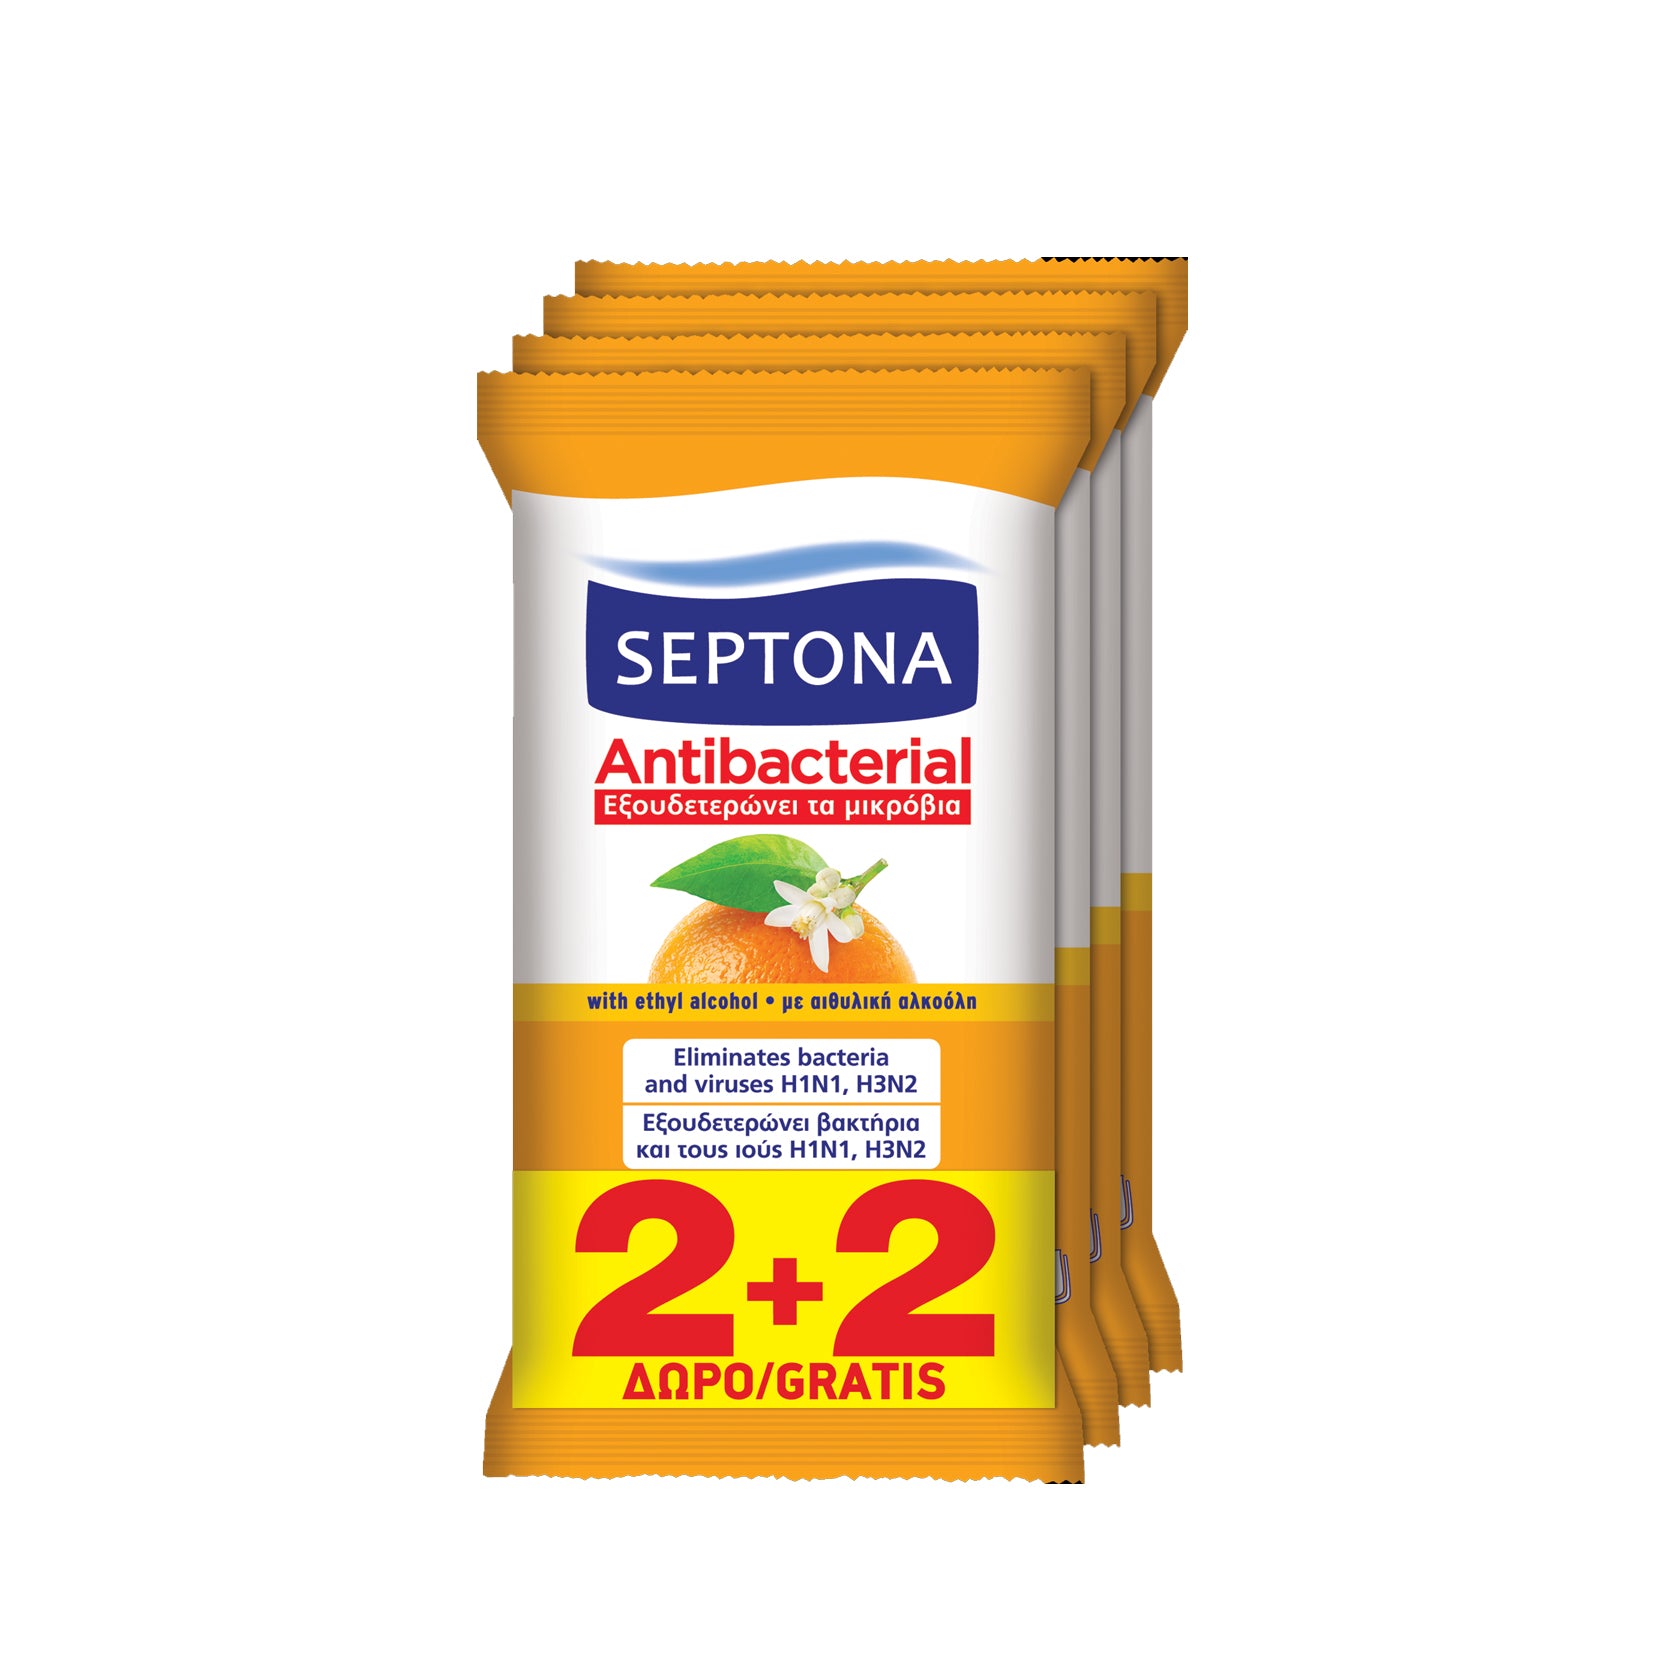 Septona Antibacterial Wipes Orange 15 pcs 2+2